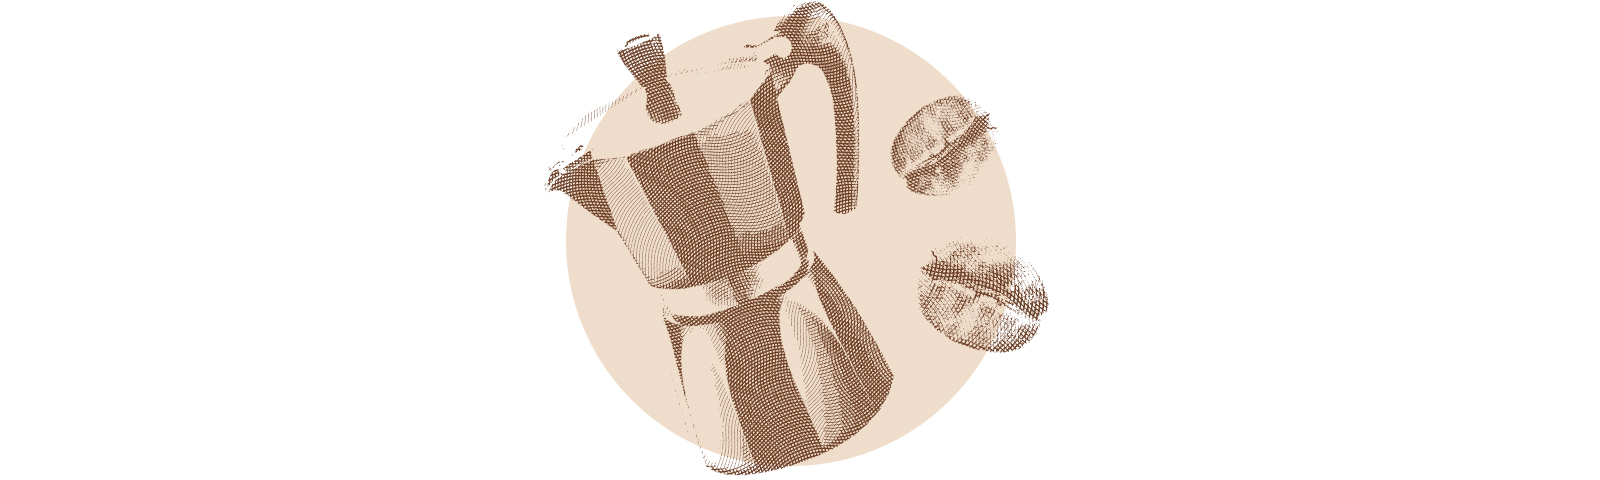 #инструктаж: как приготовить вкусный кофе дома